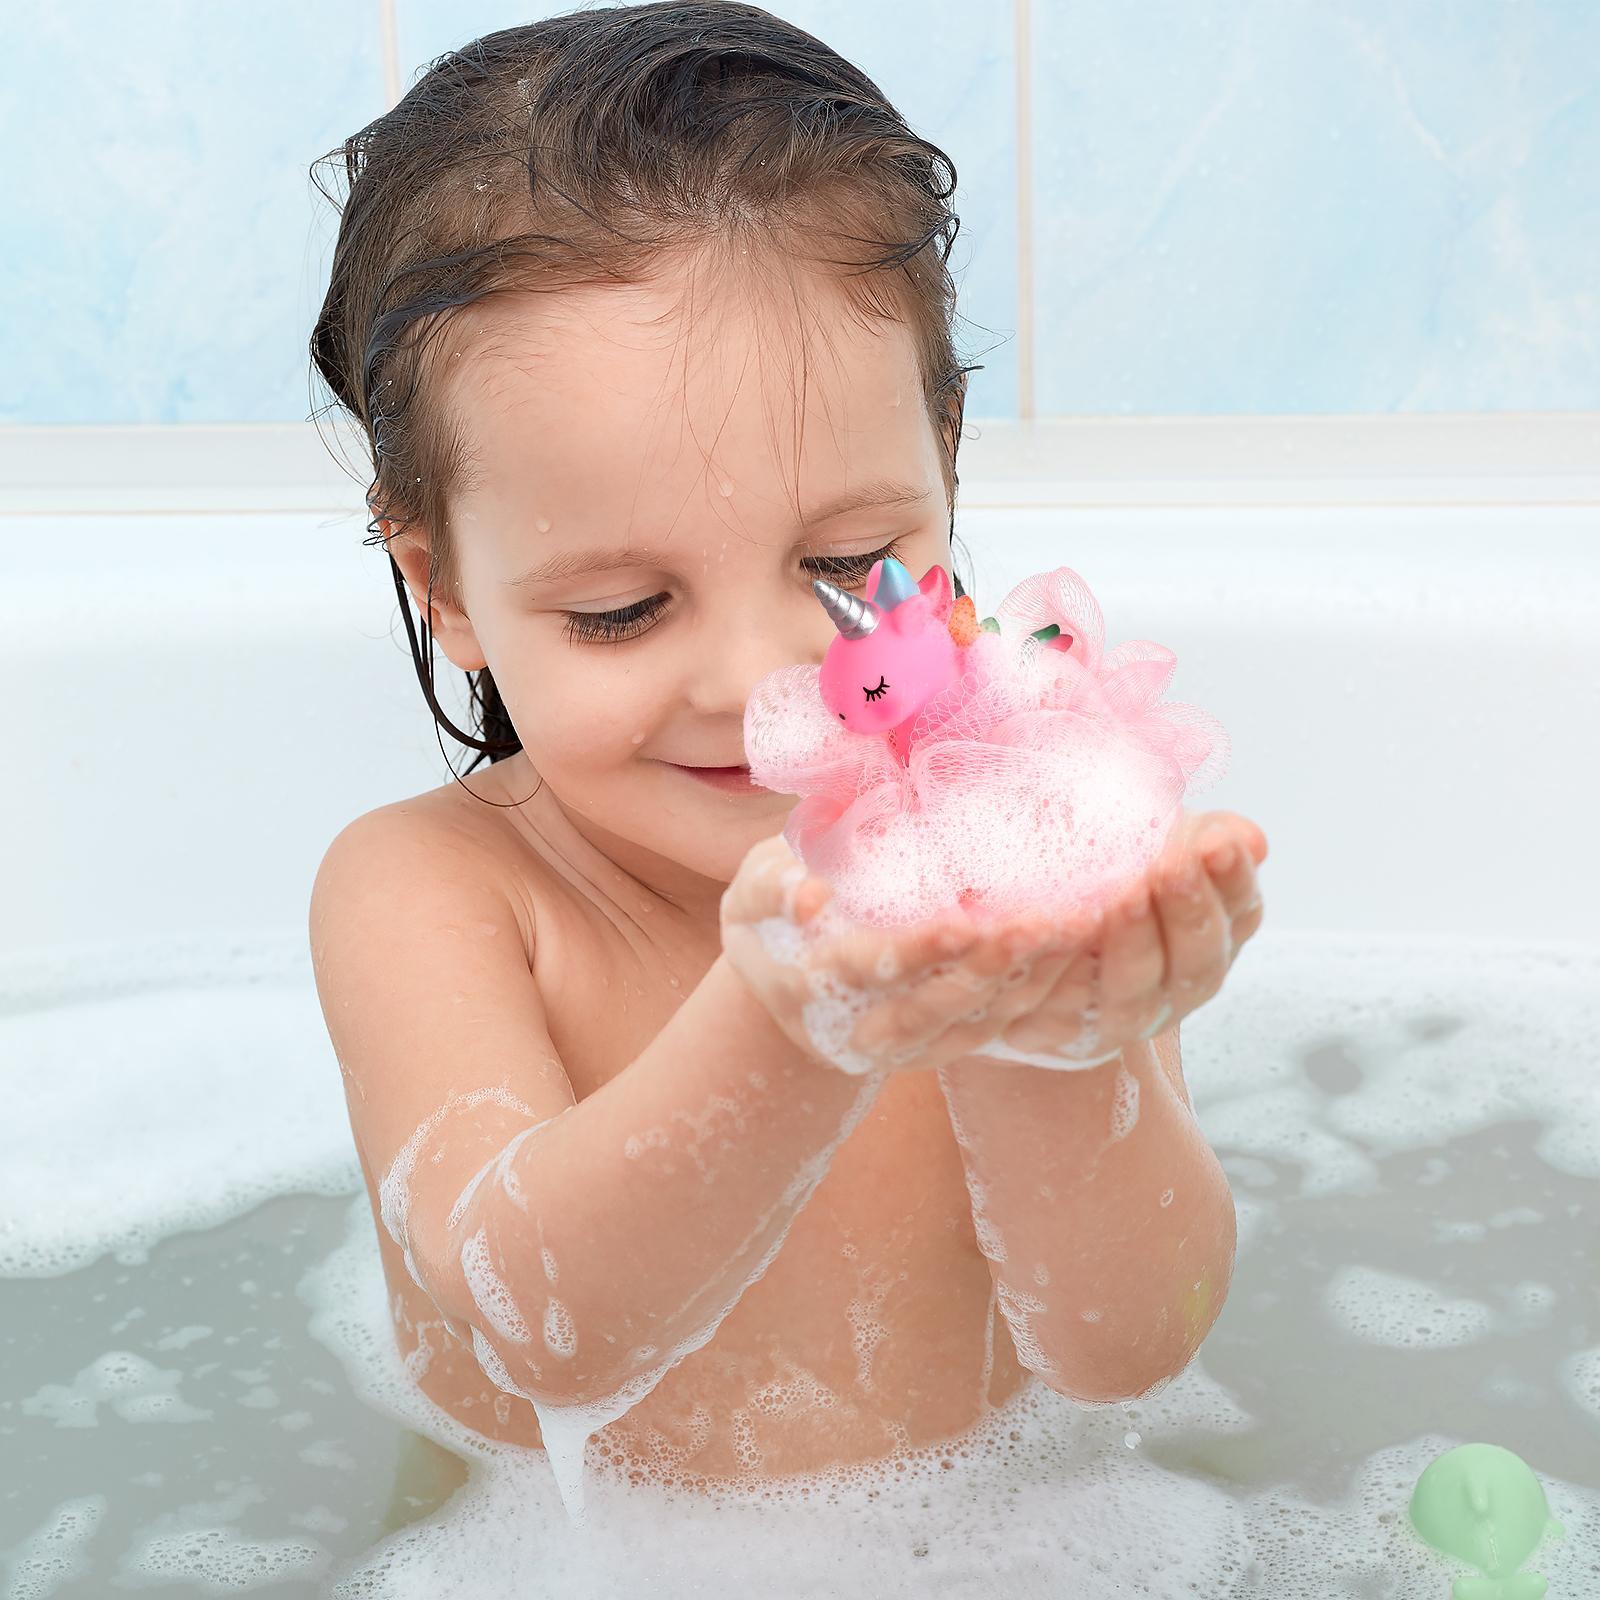 2 Pcs Bath Loofah Sponges Shower Kids Bathing Accessories Exfoliating